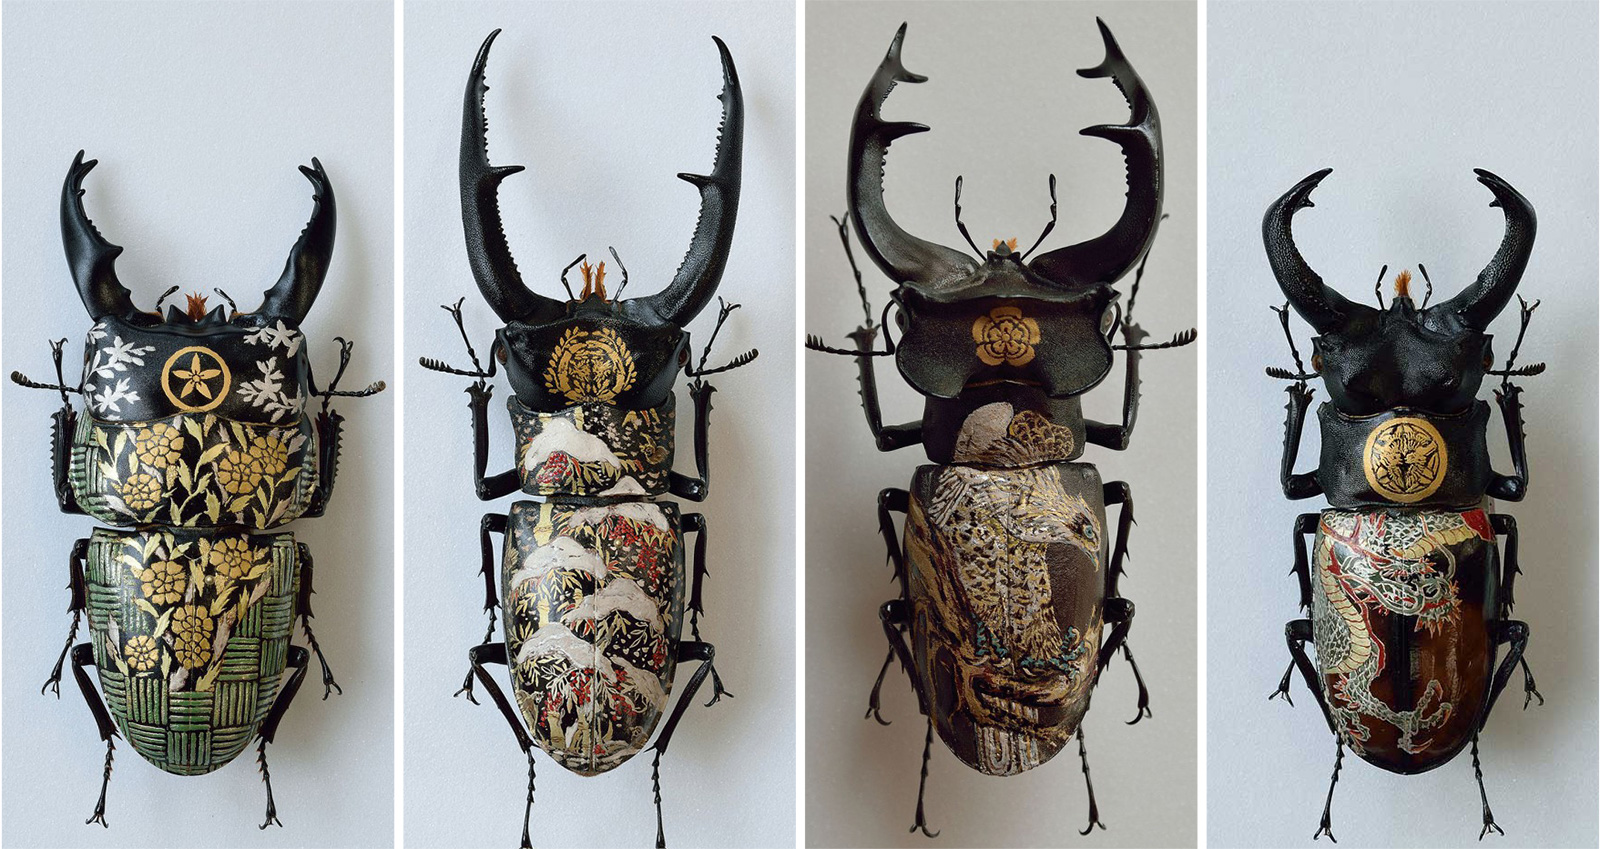 まるで漆工芸のように昆虫標本を装飾する樋口明宏さんのアート作品に心惹かれる 18年9月25日 エキサイトニュース